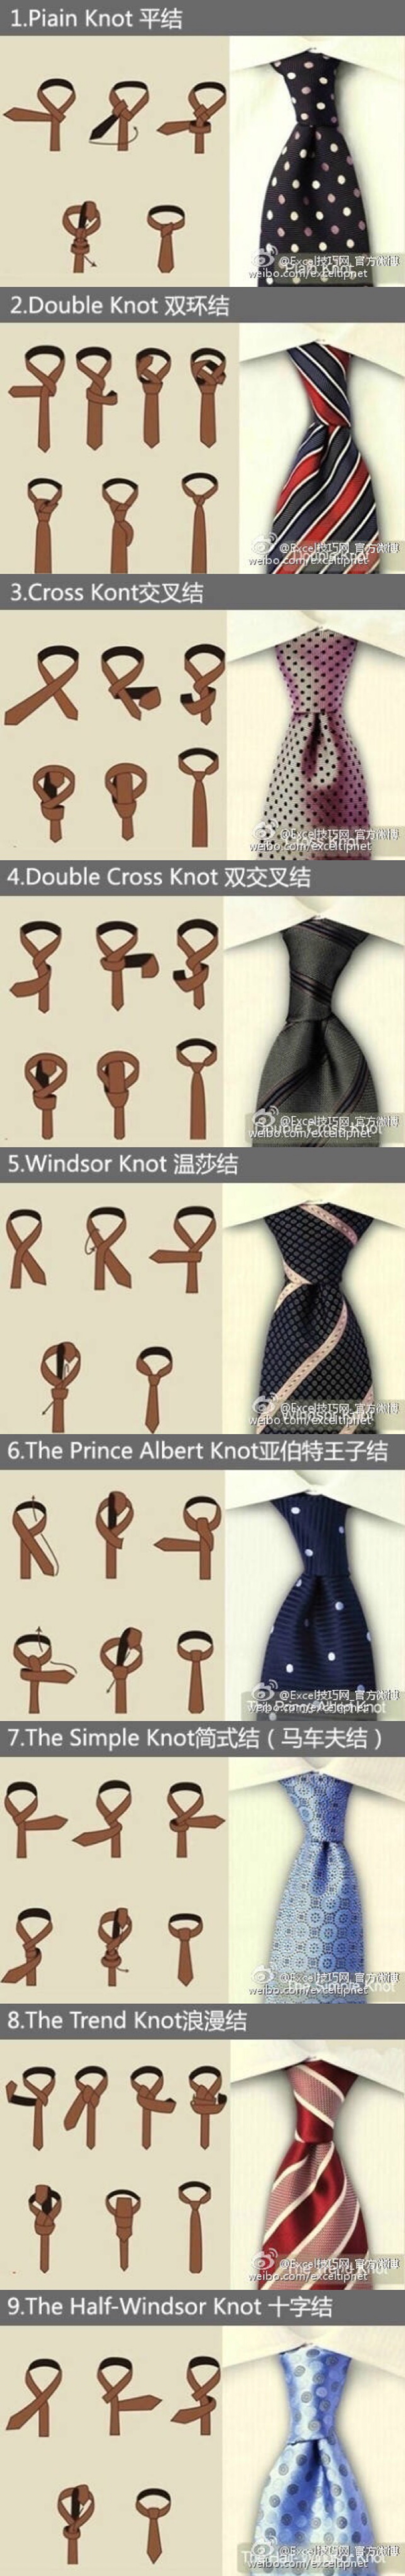 领带系法简单图片